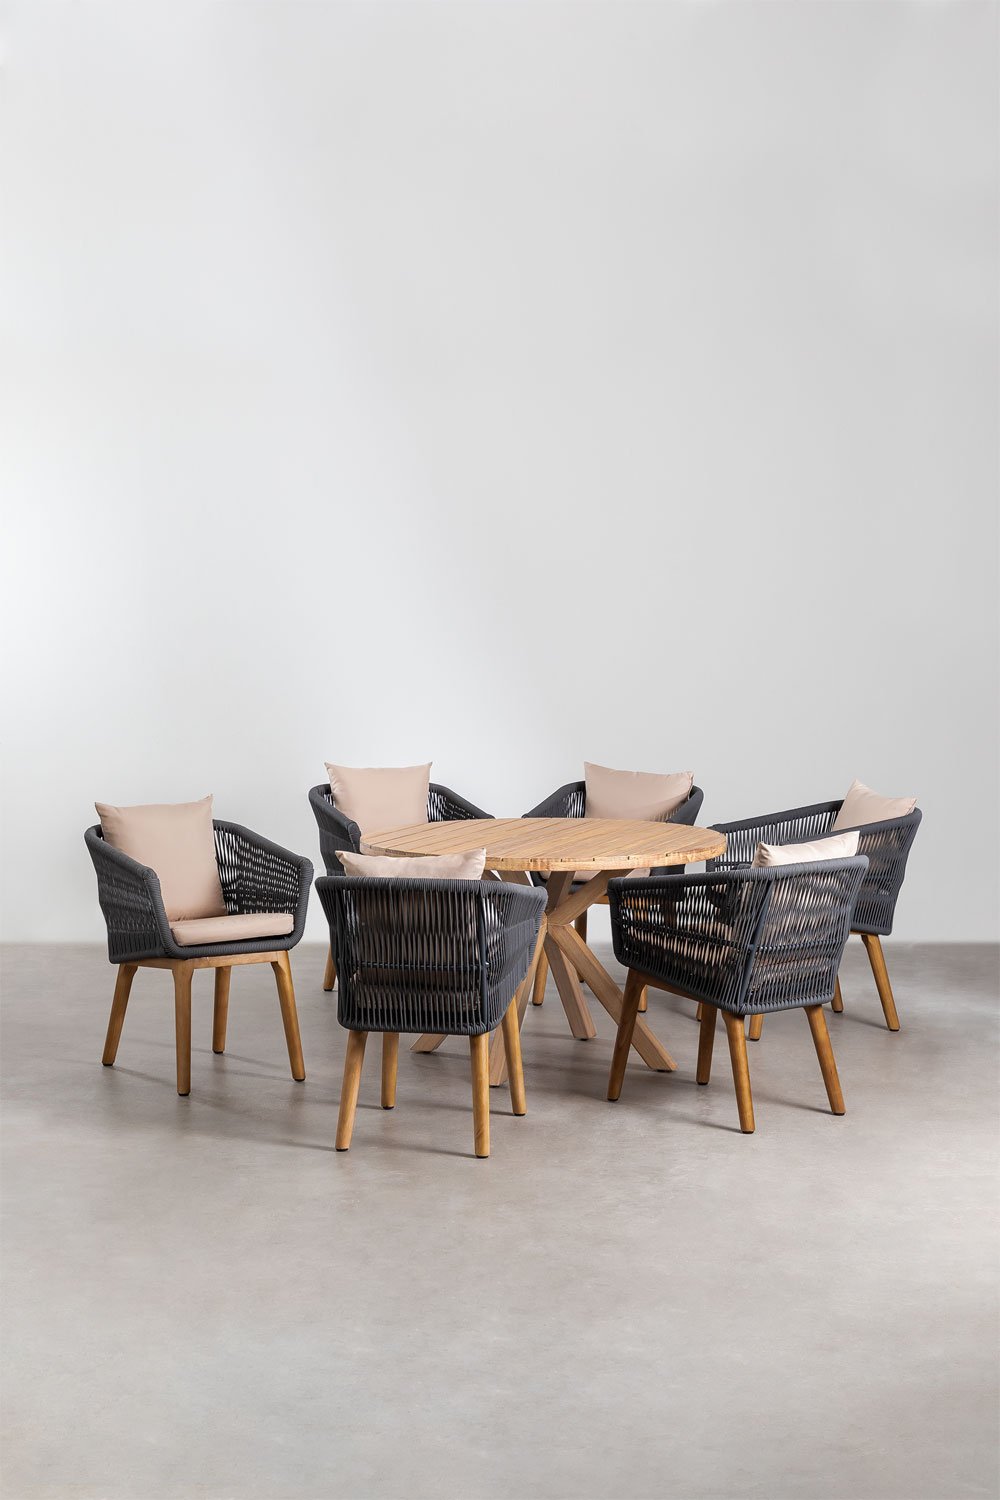 Ensemble de table ronde en bois (Ø120 cm) Naele et 6 chaises de jardin Barker, image de la galerie 1